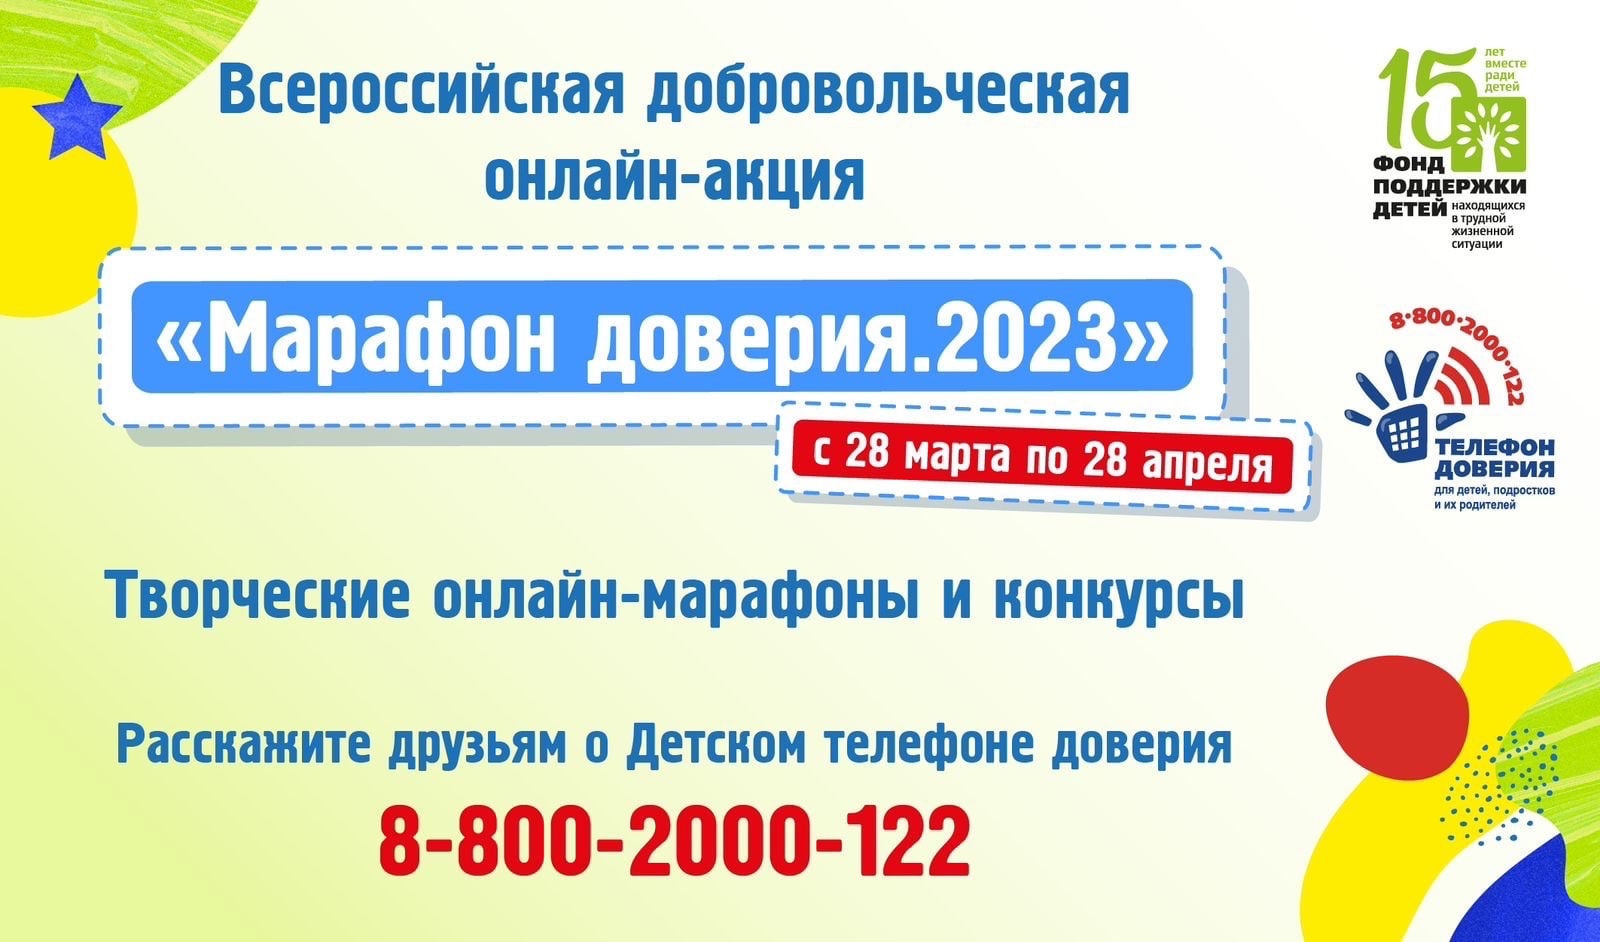 Фонд поддержки детей проводит Всероссийскую добровольческую онлайн-акцию «Марафон доверия. 2023».